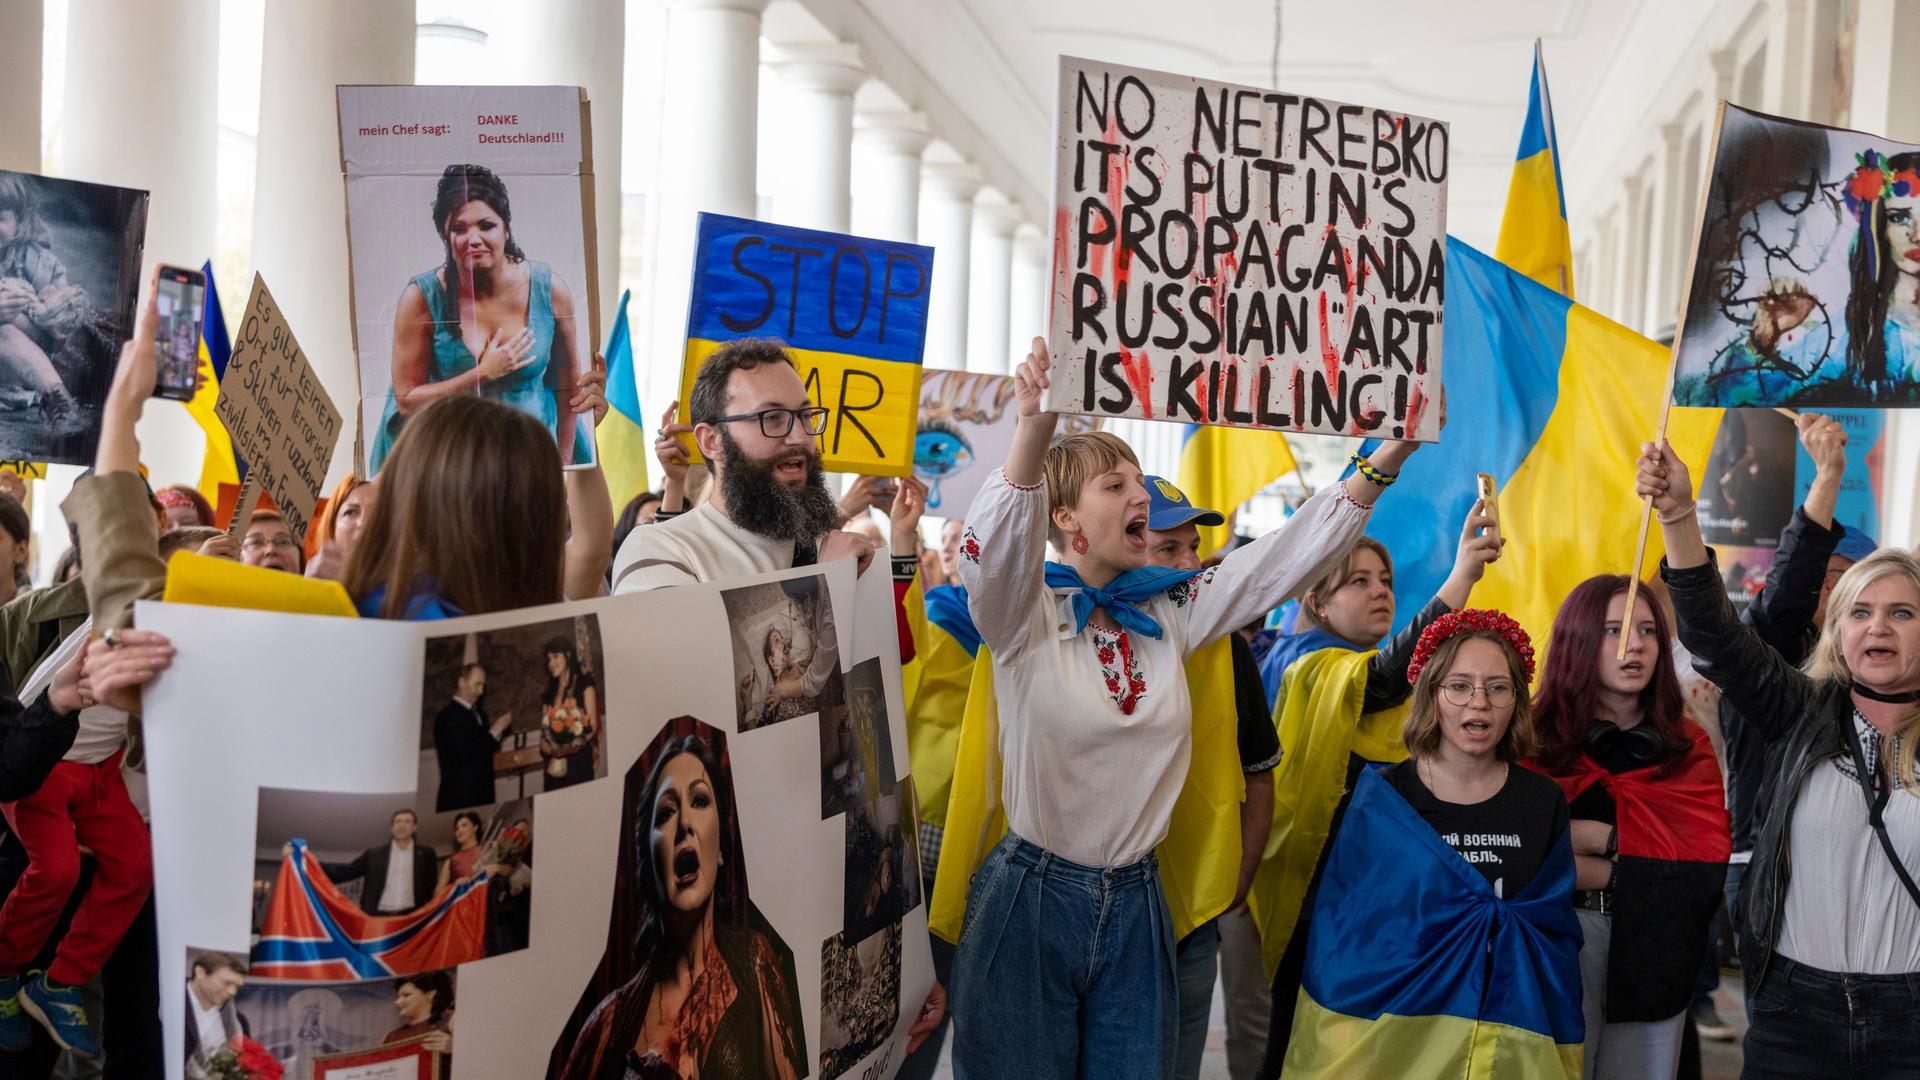 Wir sehen eine Gruppe von Demonstranten, die gegen einen Auftritt der Sopranistin Anna Netrebko protestiert. Sie sind mit Flaggen der Ukraine ausgestattet und halten Plakate gegen Netrebko in die Höhe.